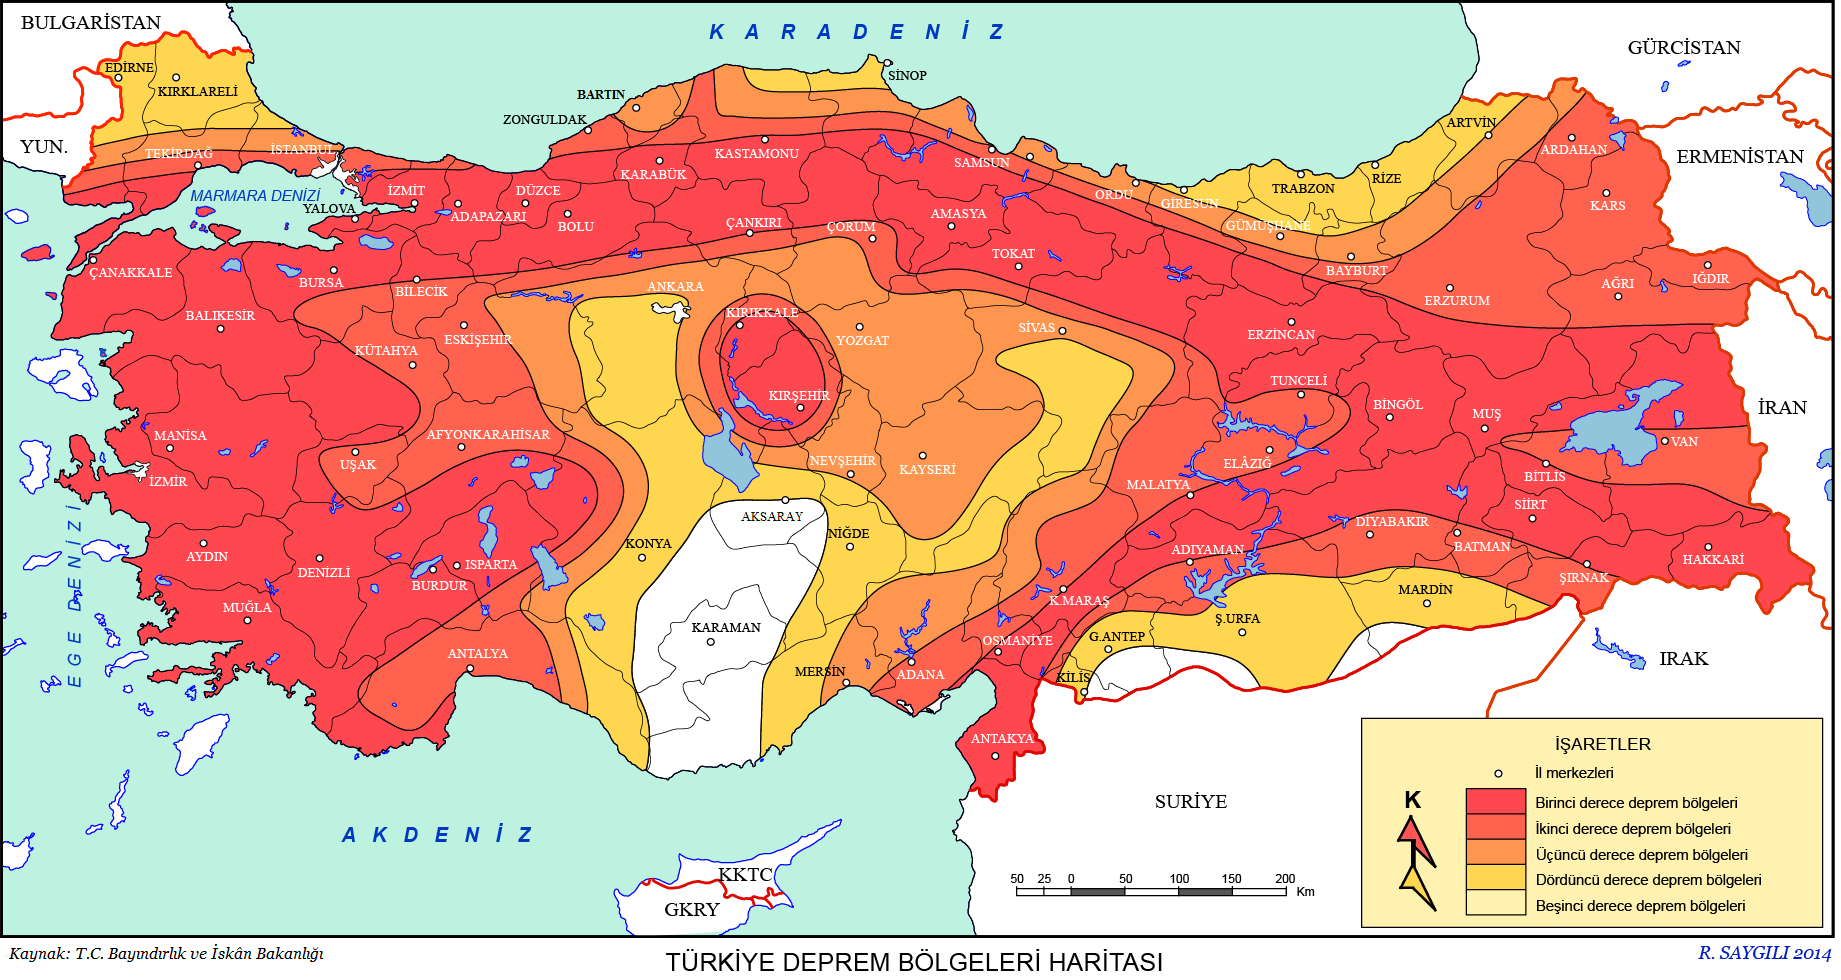 turkiye-deprem-bolgeleri-haritasi - Açık Veri ve Veri Gazeteciliği Türkiye